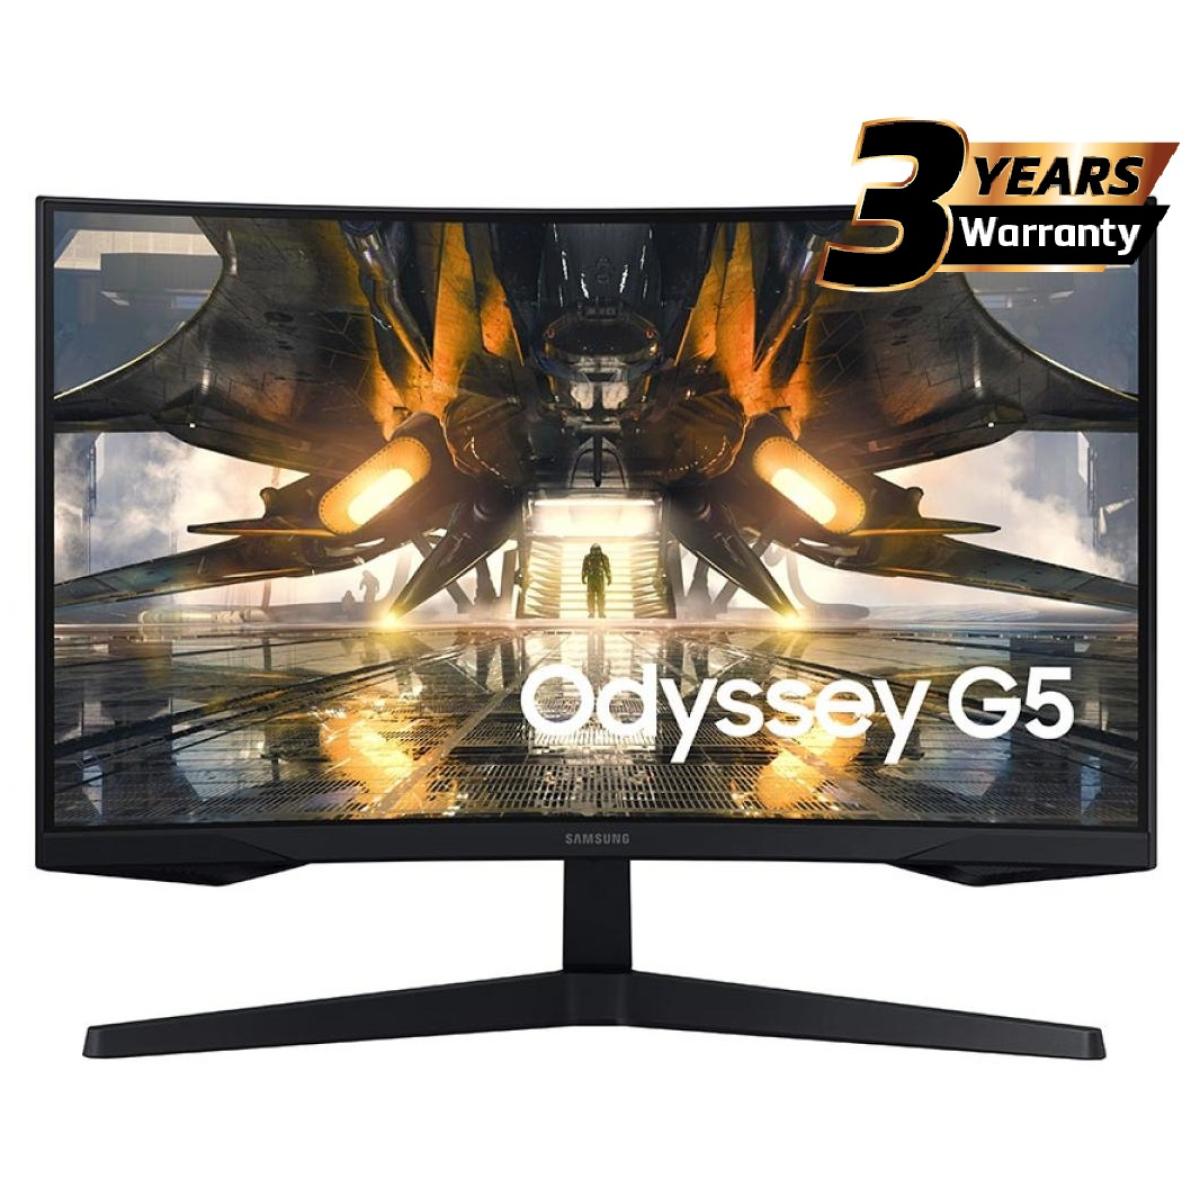 المنحنية 27 بوصة مع معدل تحديث 144 هرتز و وقت استجابة 1 مللي ثانية Odyssey G55T Gaming WQHD شاشة سامسونج